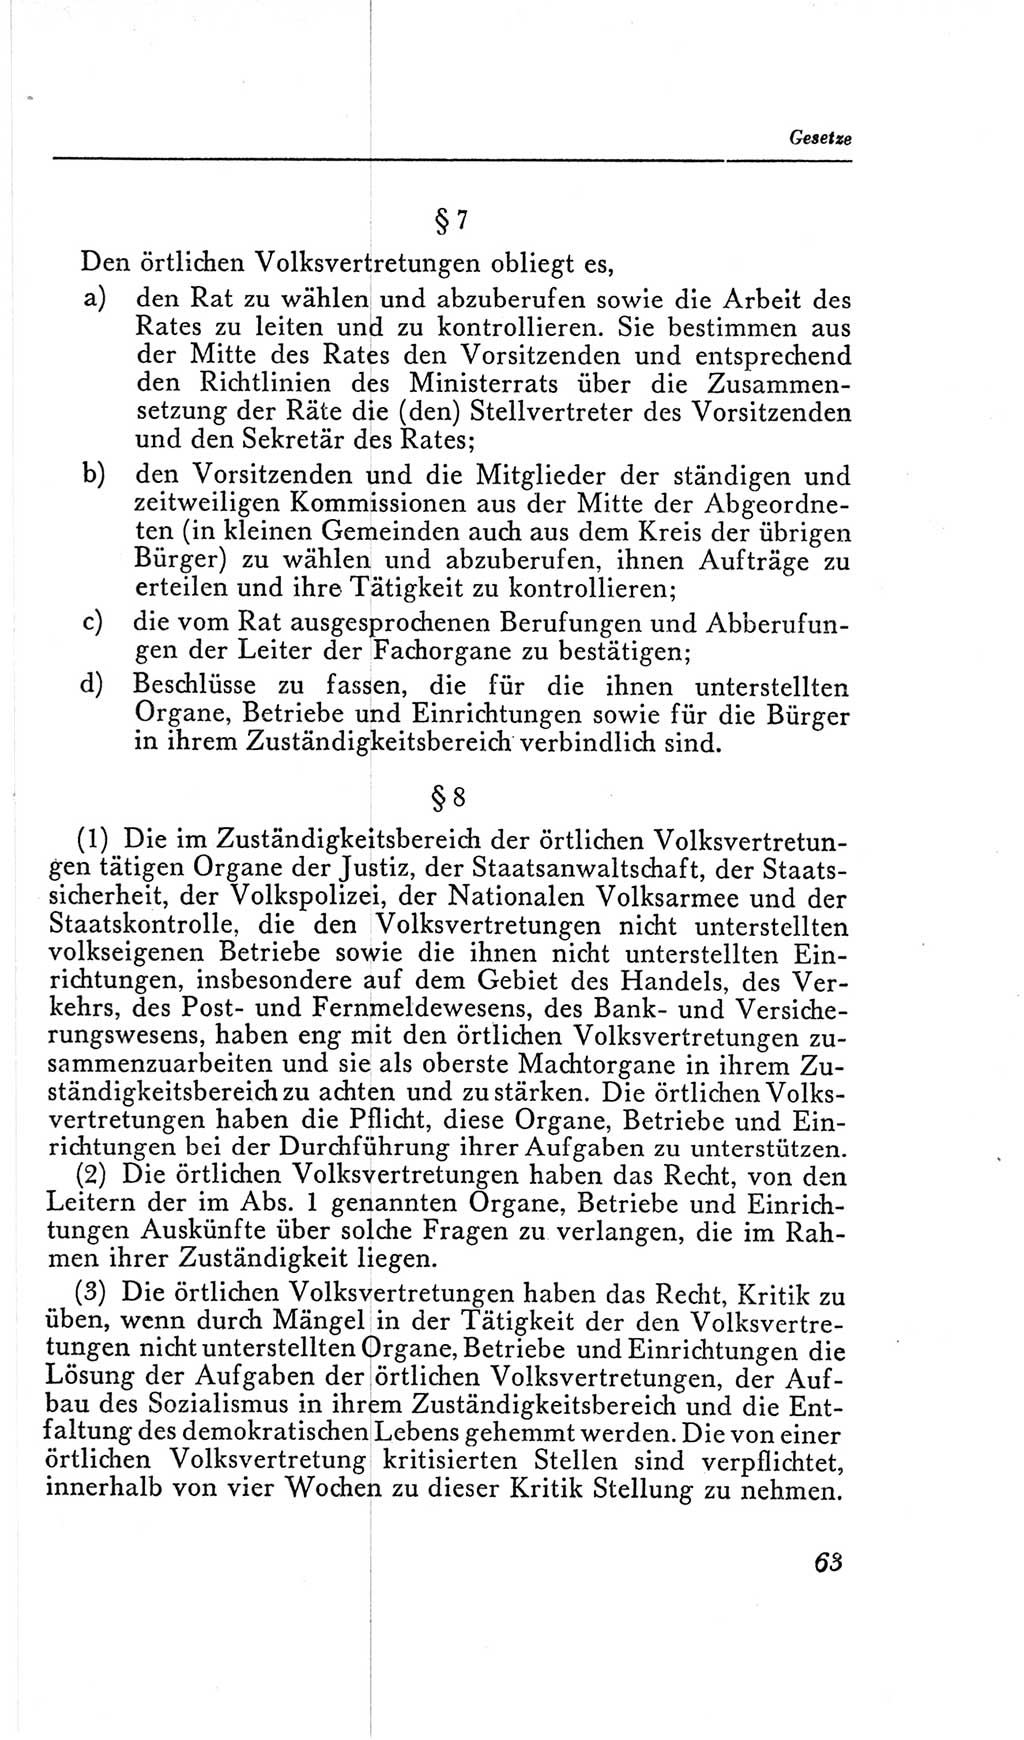 Handbuch der Volkskammer (VK) der Deutschen Demokratischen Republik (DDR), 2. Wahlperiode 1954-1958, Seite 63 (Hdb. VK. DDR, 2. WP. 1954-1958, S. 63)